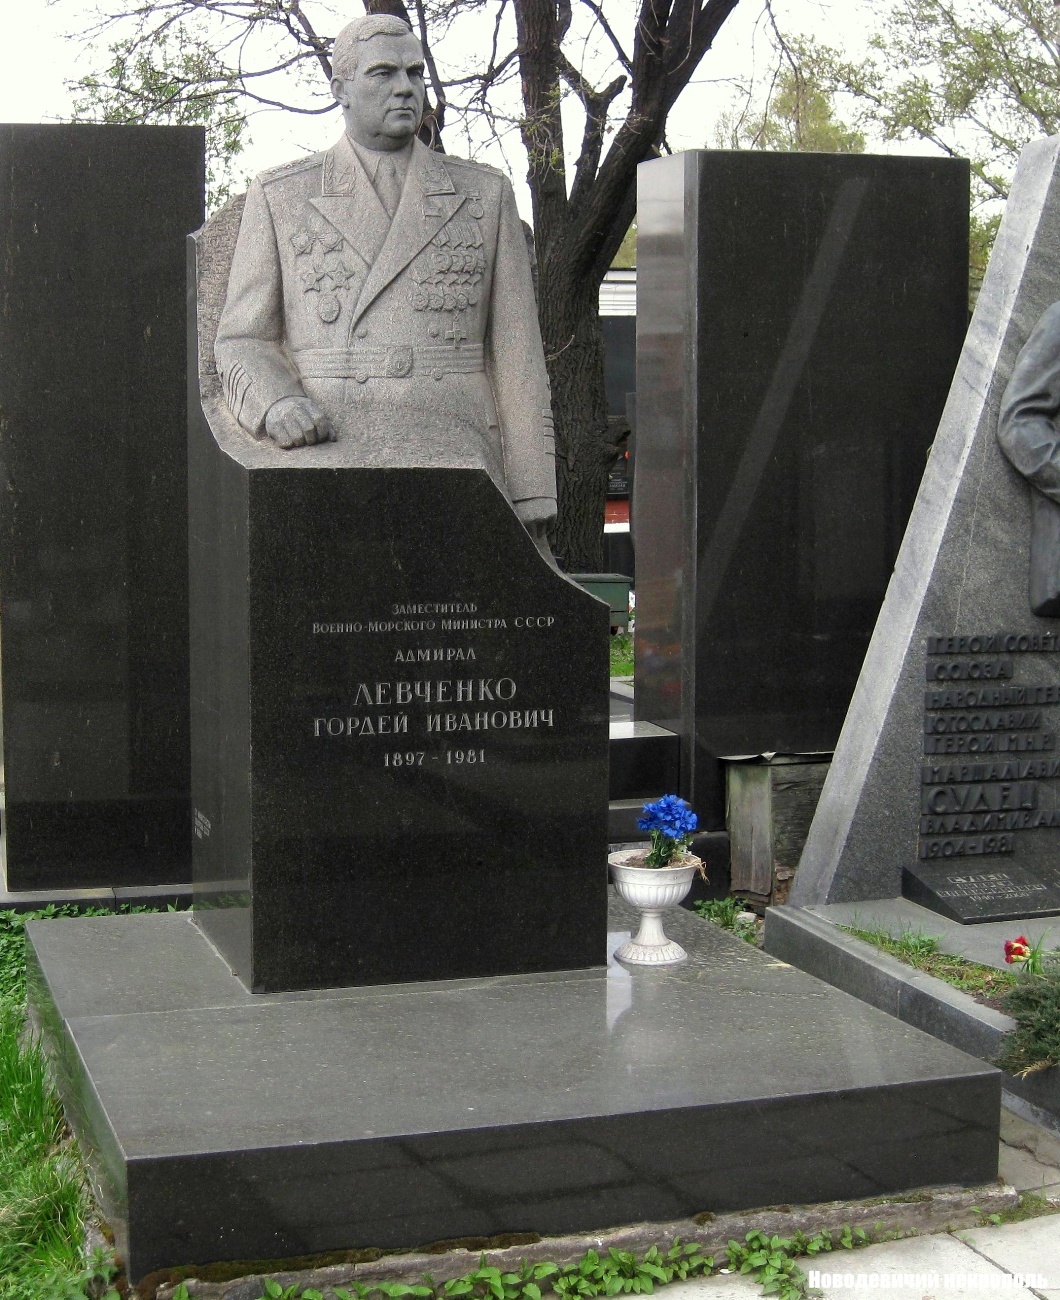 Памятник на могиле Левченко Г.И. (1897–1981), ск. Д.Никитин, арх. Е.Ефремов, на Новодевичьем кладбище (7–17–18).